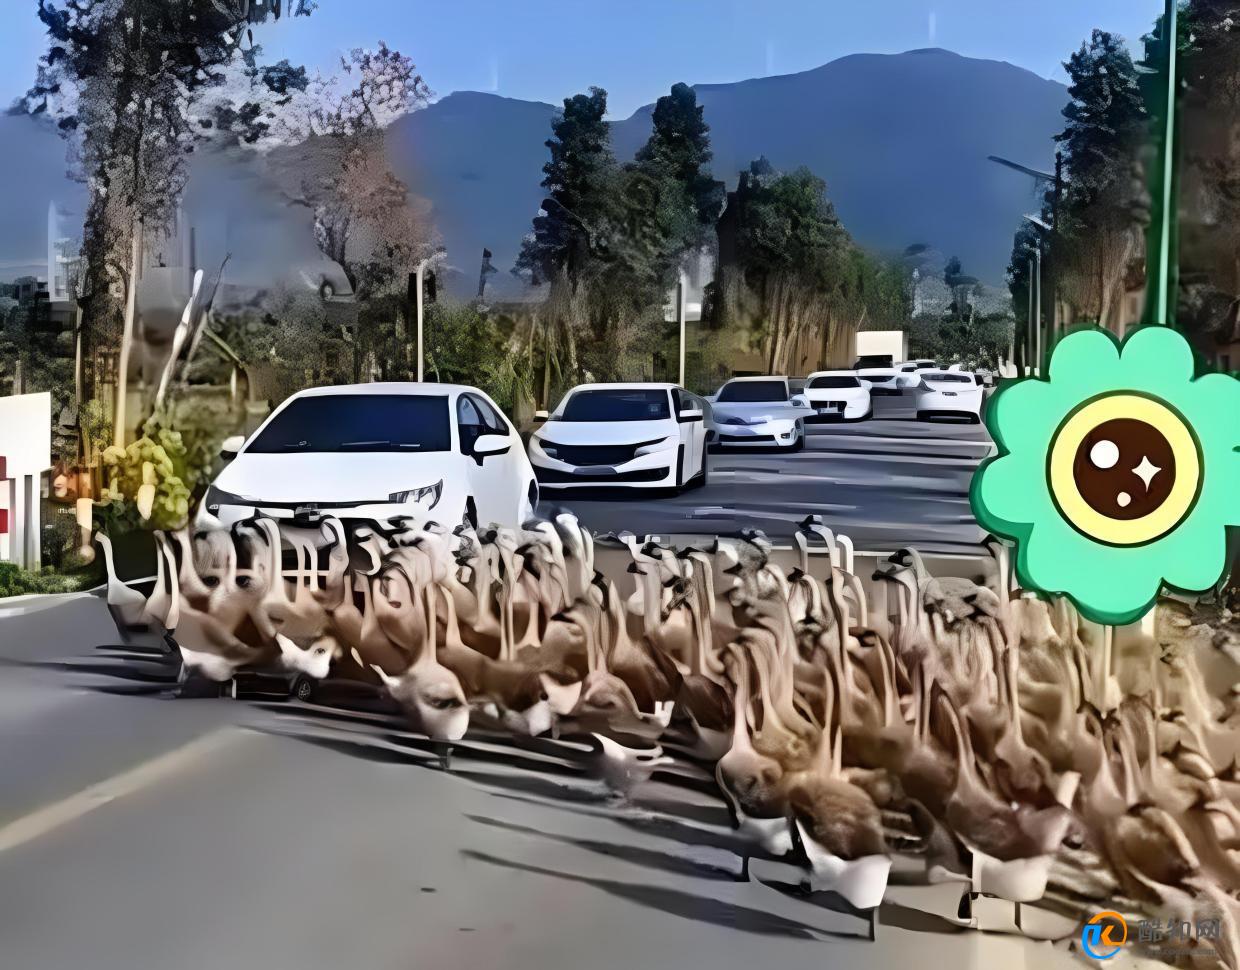 想破头也不知道堵车原因是800只鹅 凸显交通问题